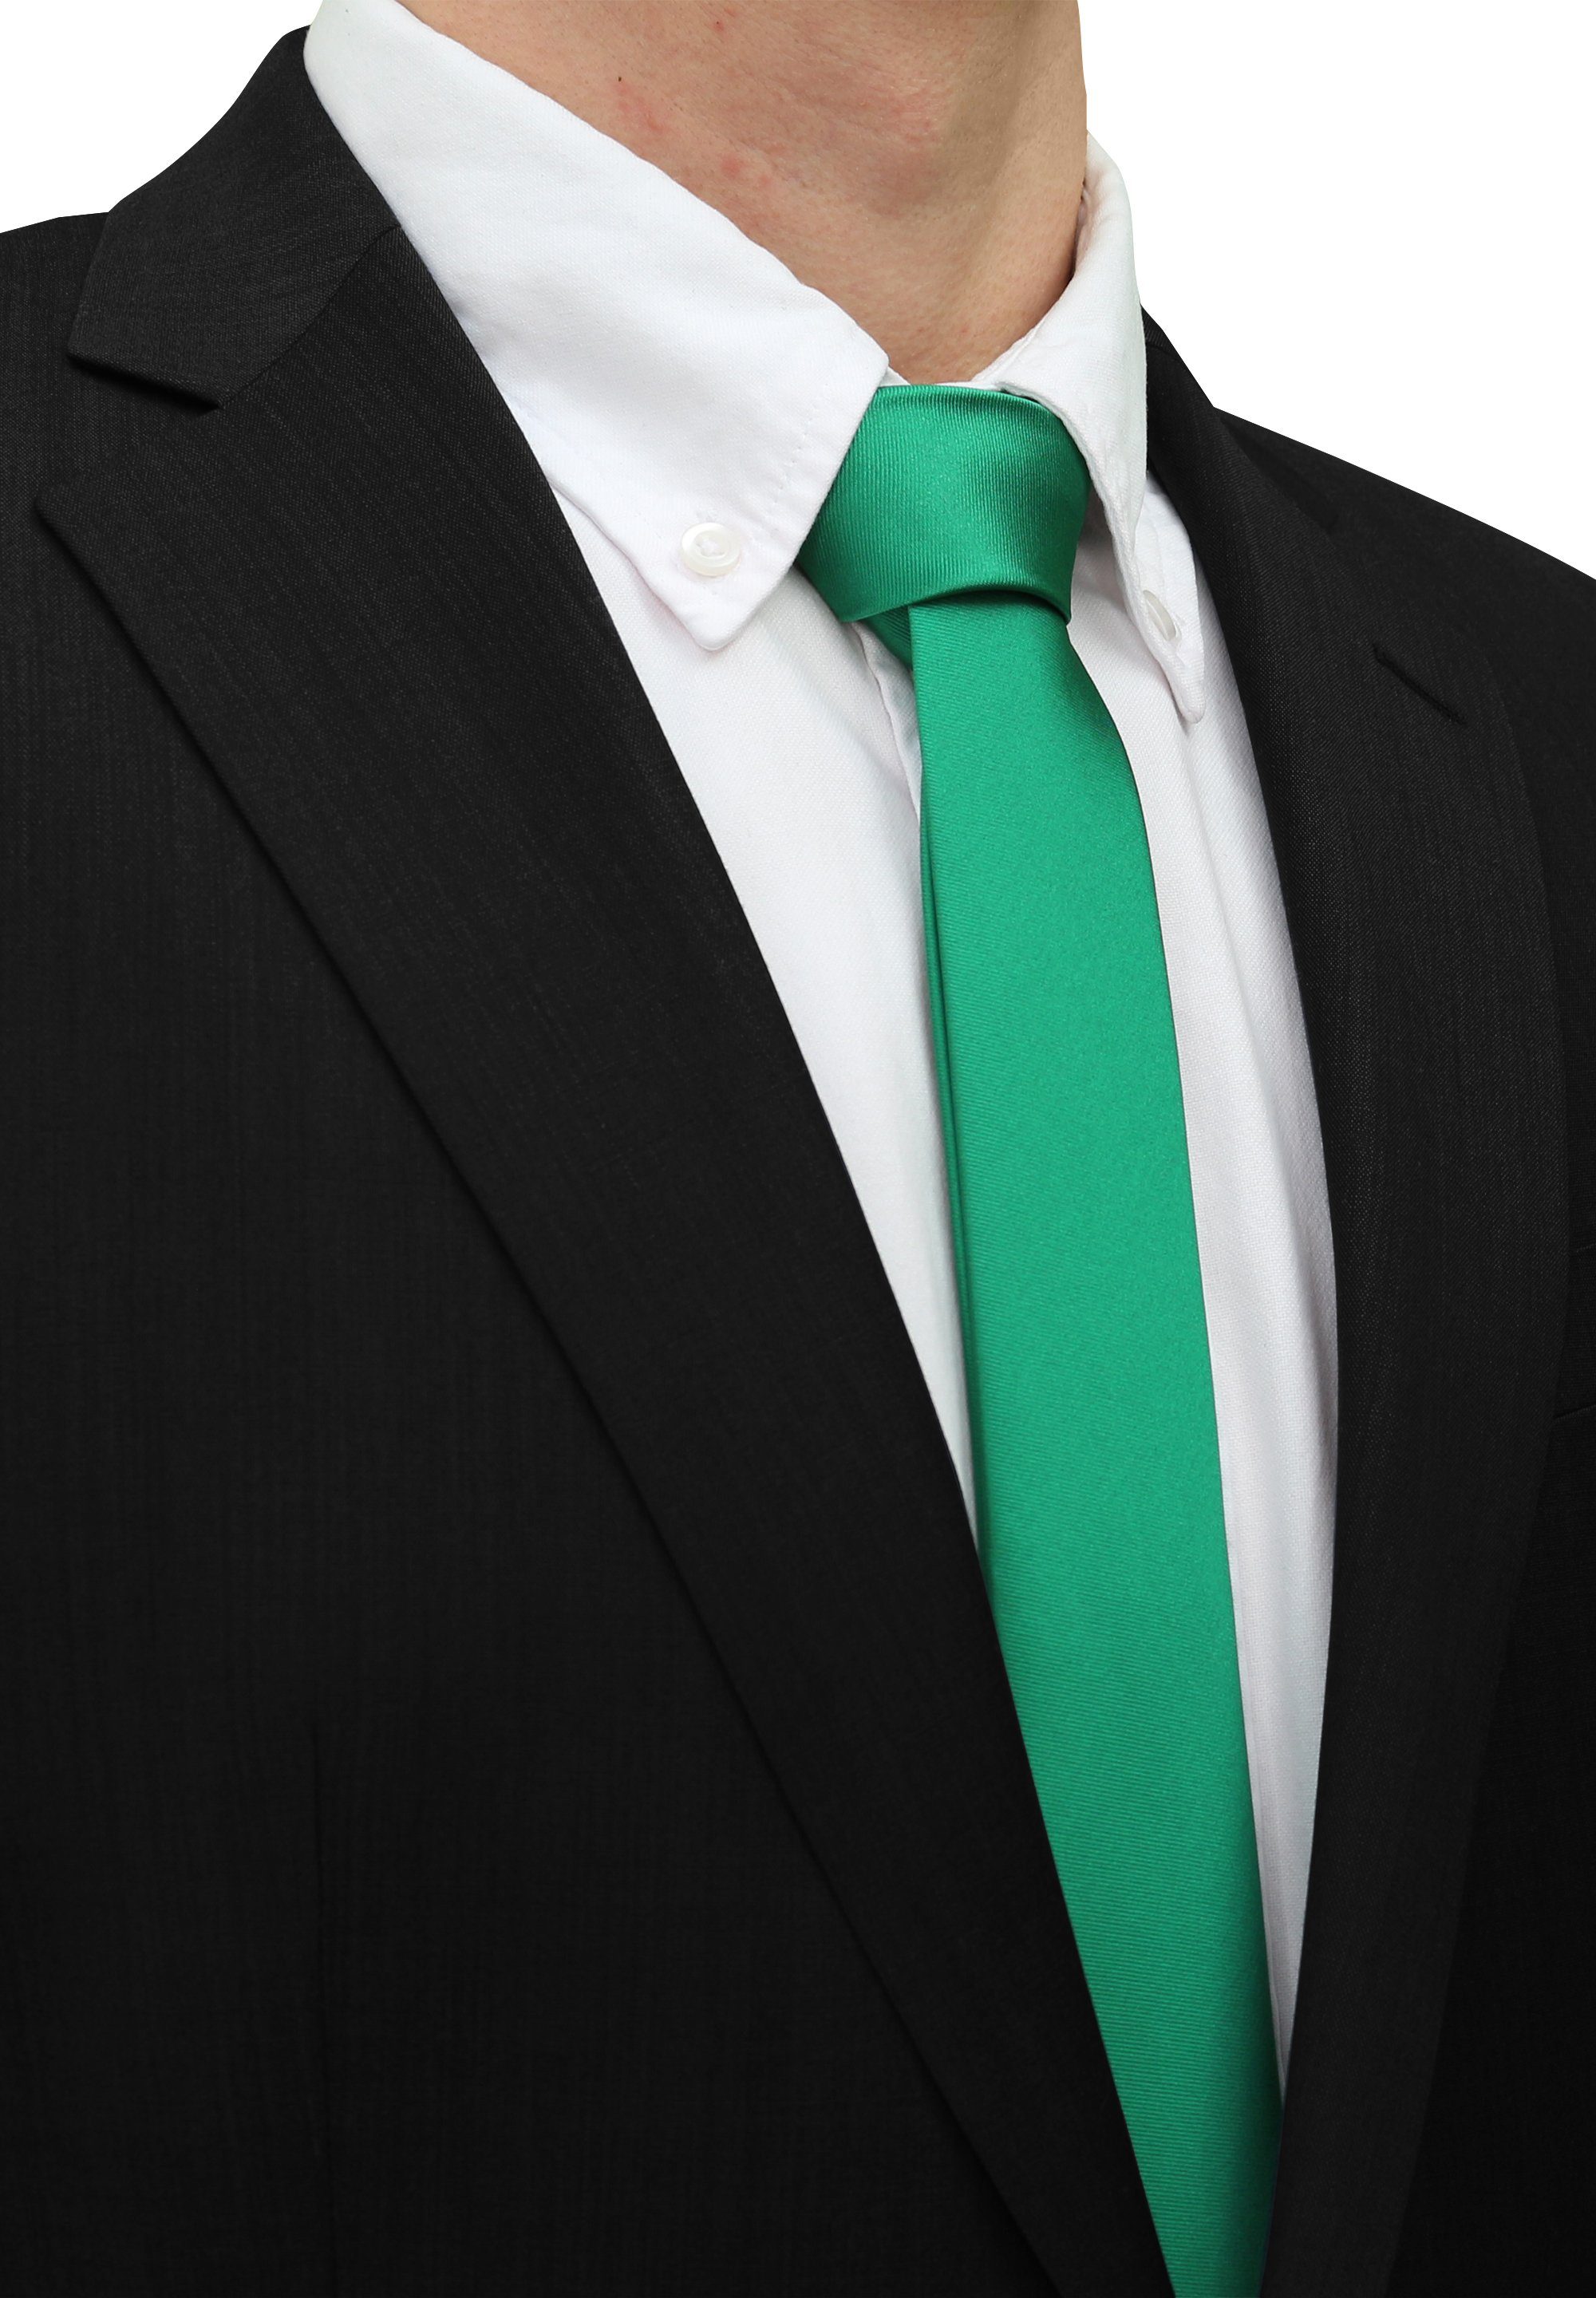 Fabio Farini Krawatte einfarbige Herren Schlips - Unicolor Krawatte in 6cm oder 8cm Breite (Unifarben) Schmal (6cm), Grün perfekt als Geschenk